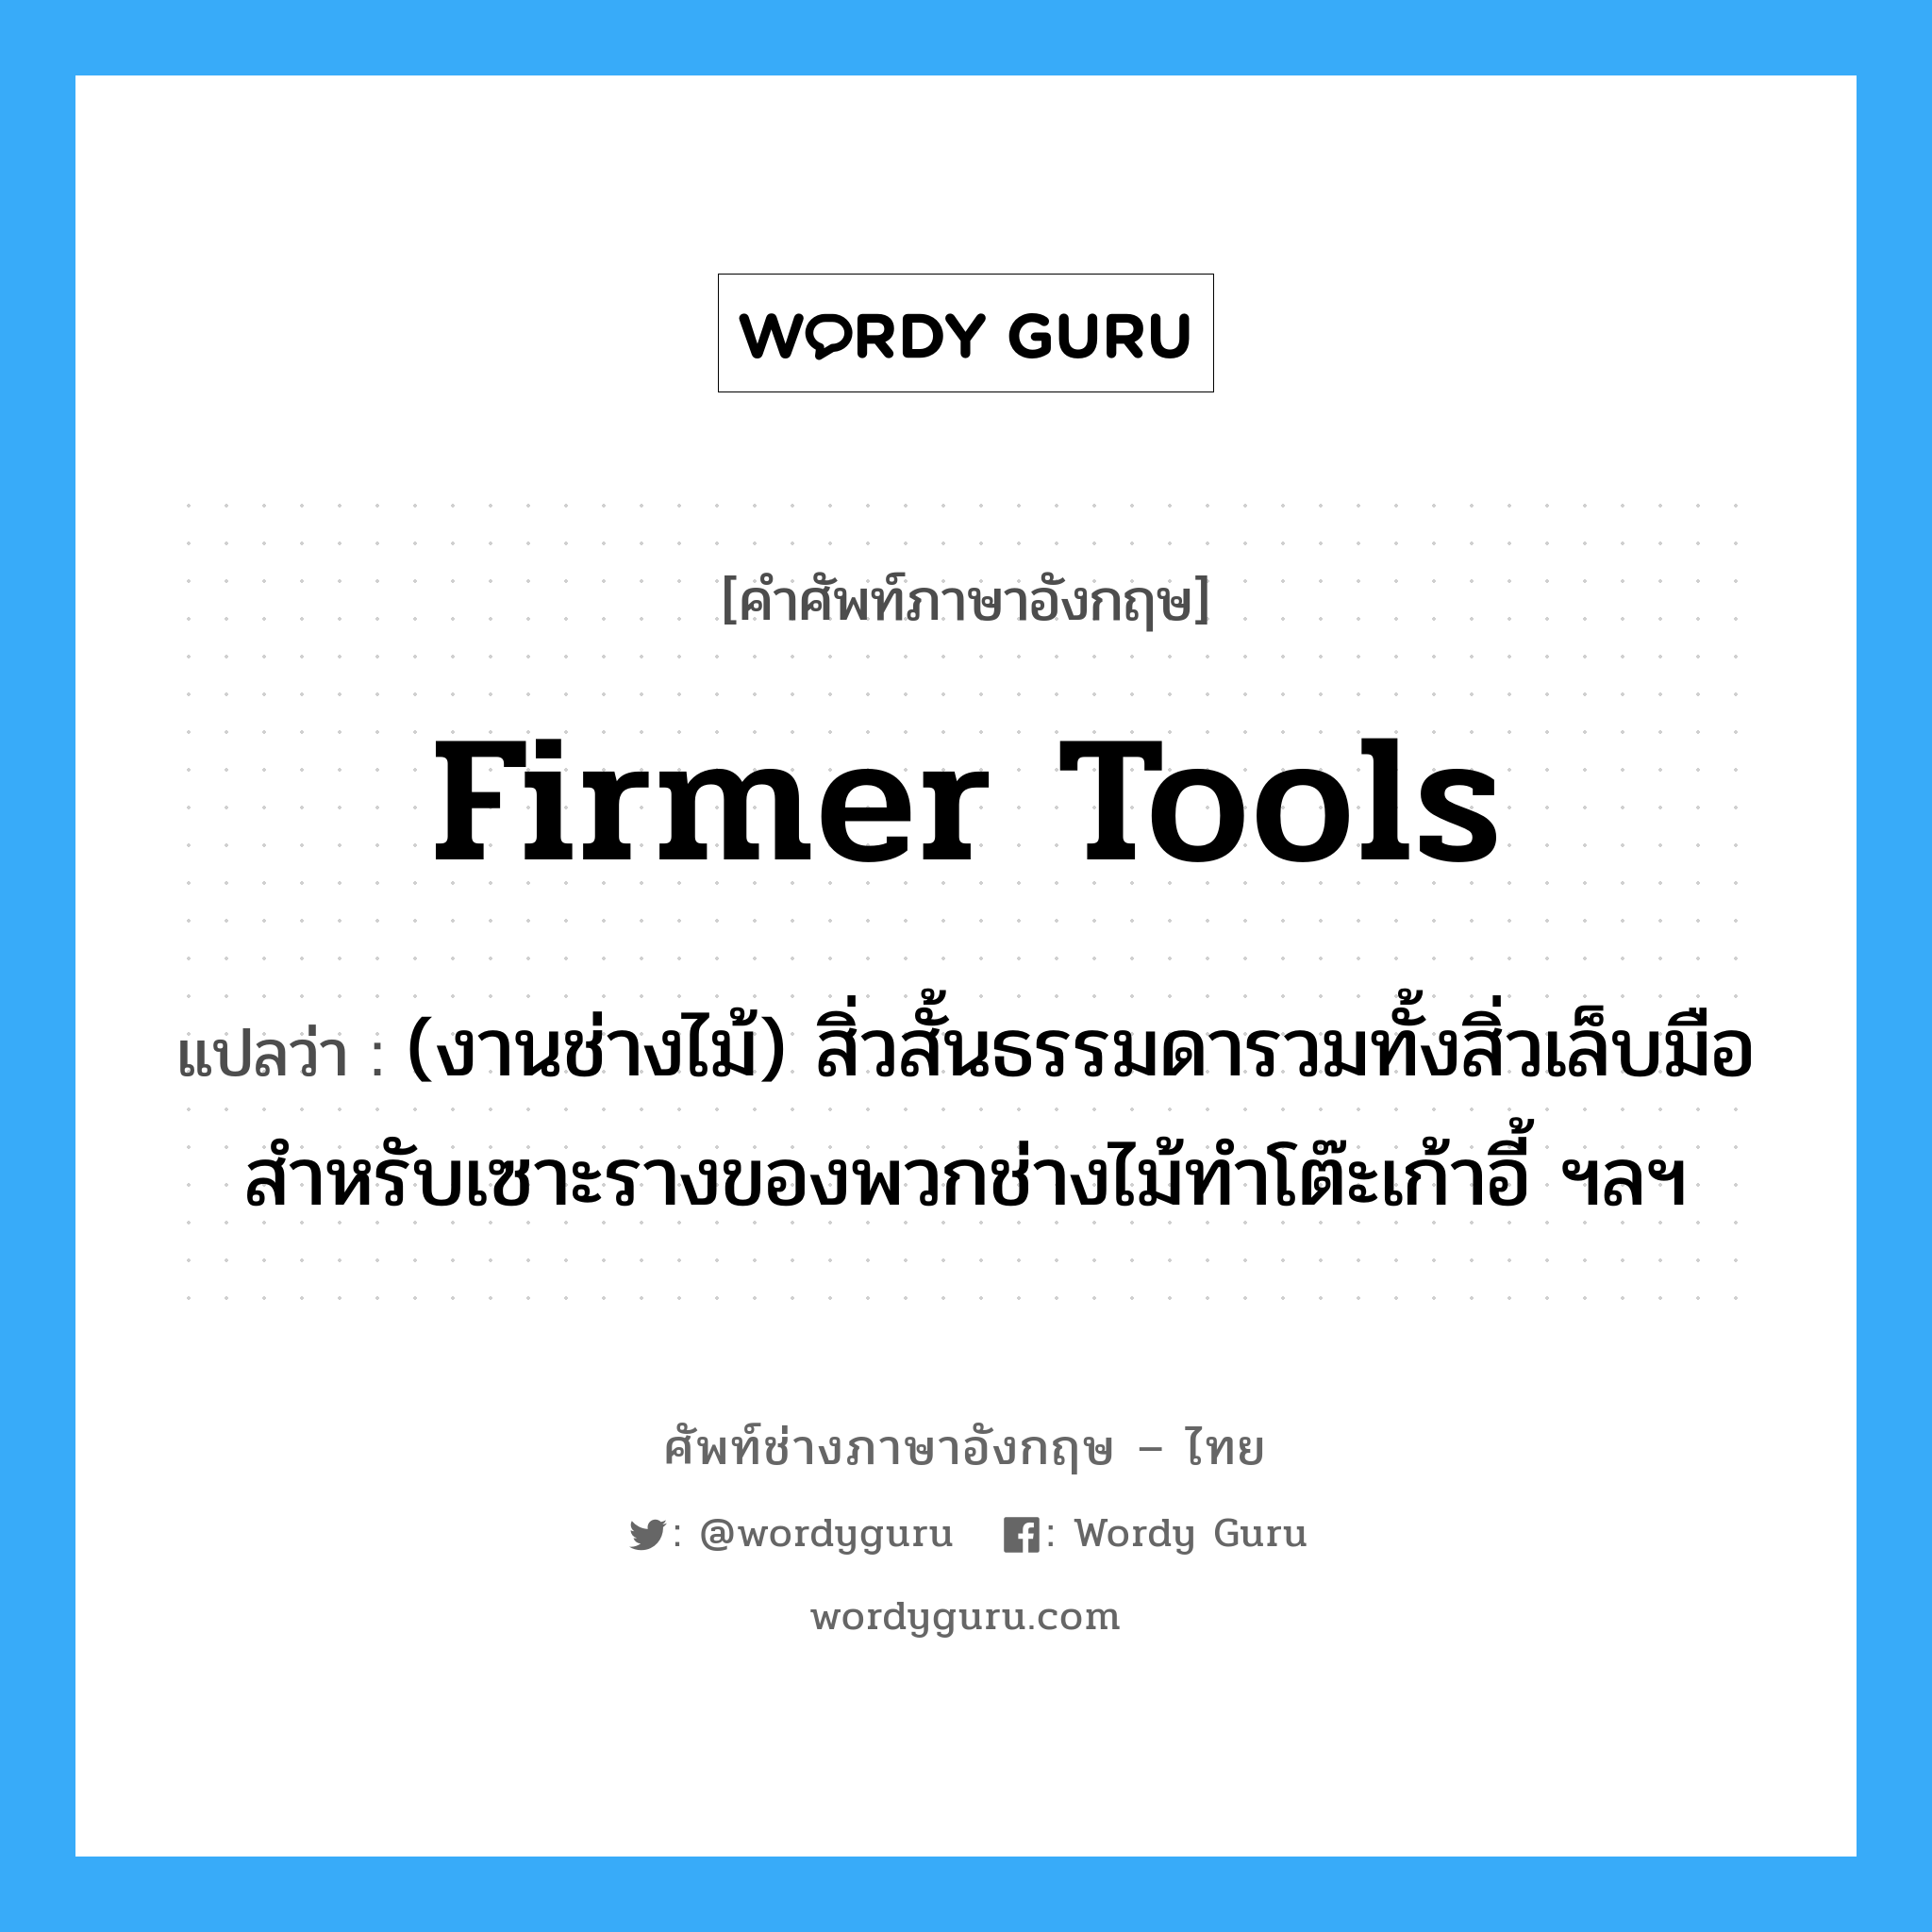 firmer tools แปลว่า?, คำศัพท์ช่างภาษาอังกฤษ - ไทย firmer tools คำศัพท์ภาษาอังกฤษ firmer tools แปลว่า (งานช่างไม้) สิ่วสั้นธรรมดารวมทั้งสิ่วเล็บมือสำหรับเซาะรางของพวกช่างไม้ทำโต๊ะเก้าอี้ ฯลฯ